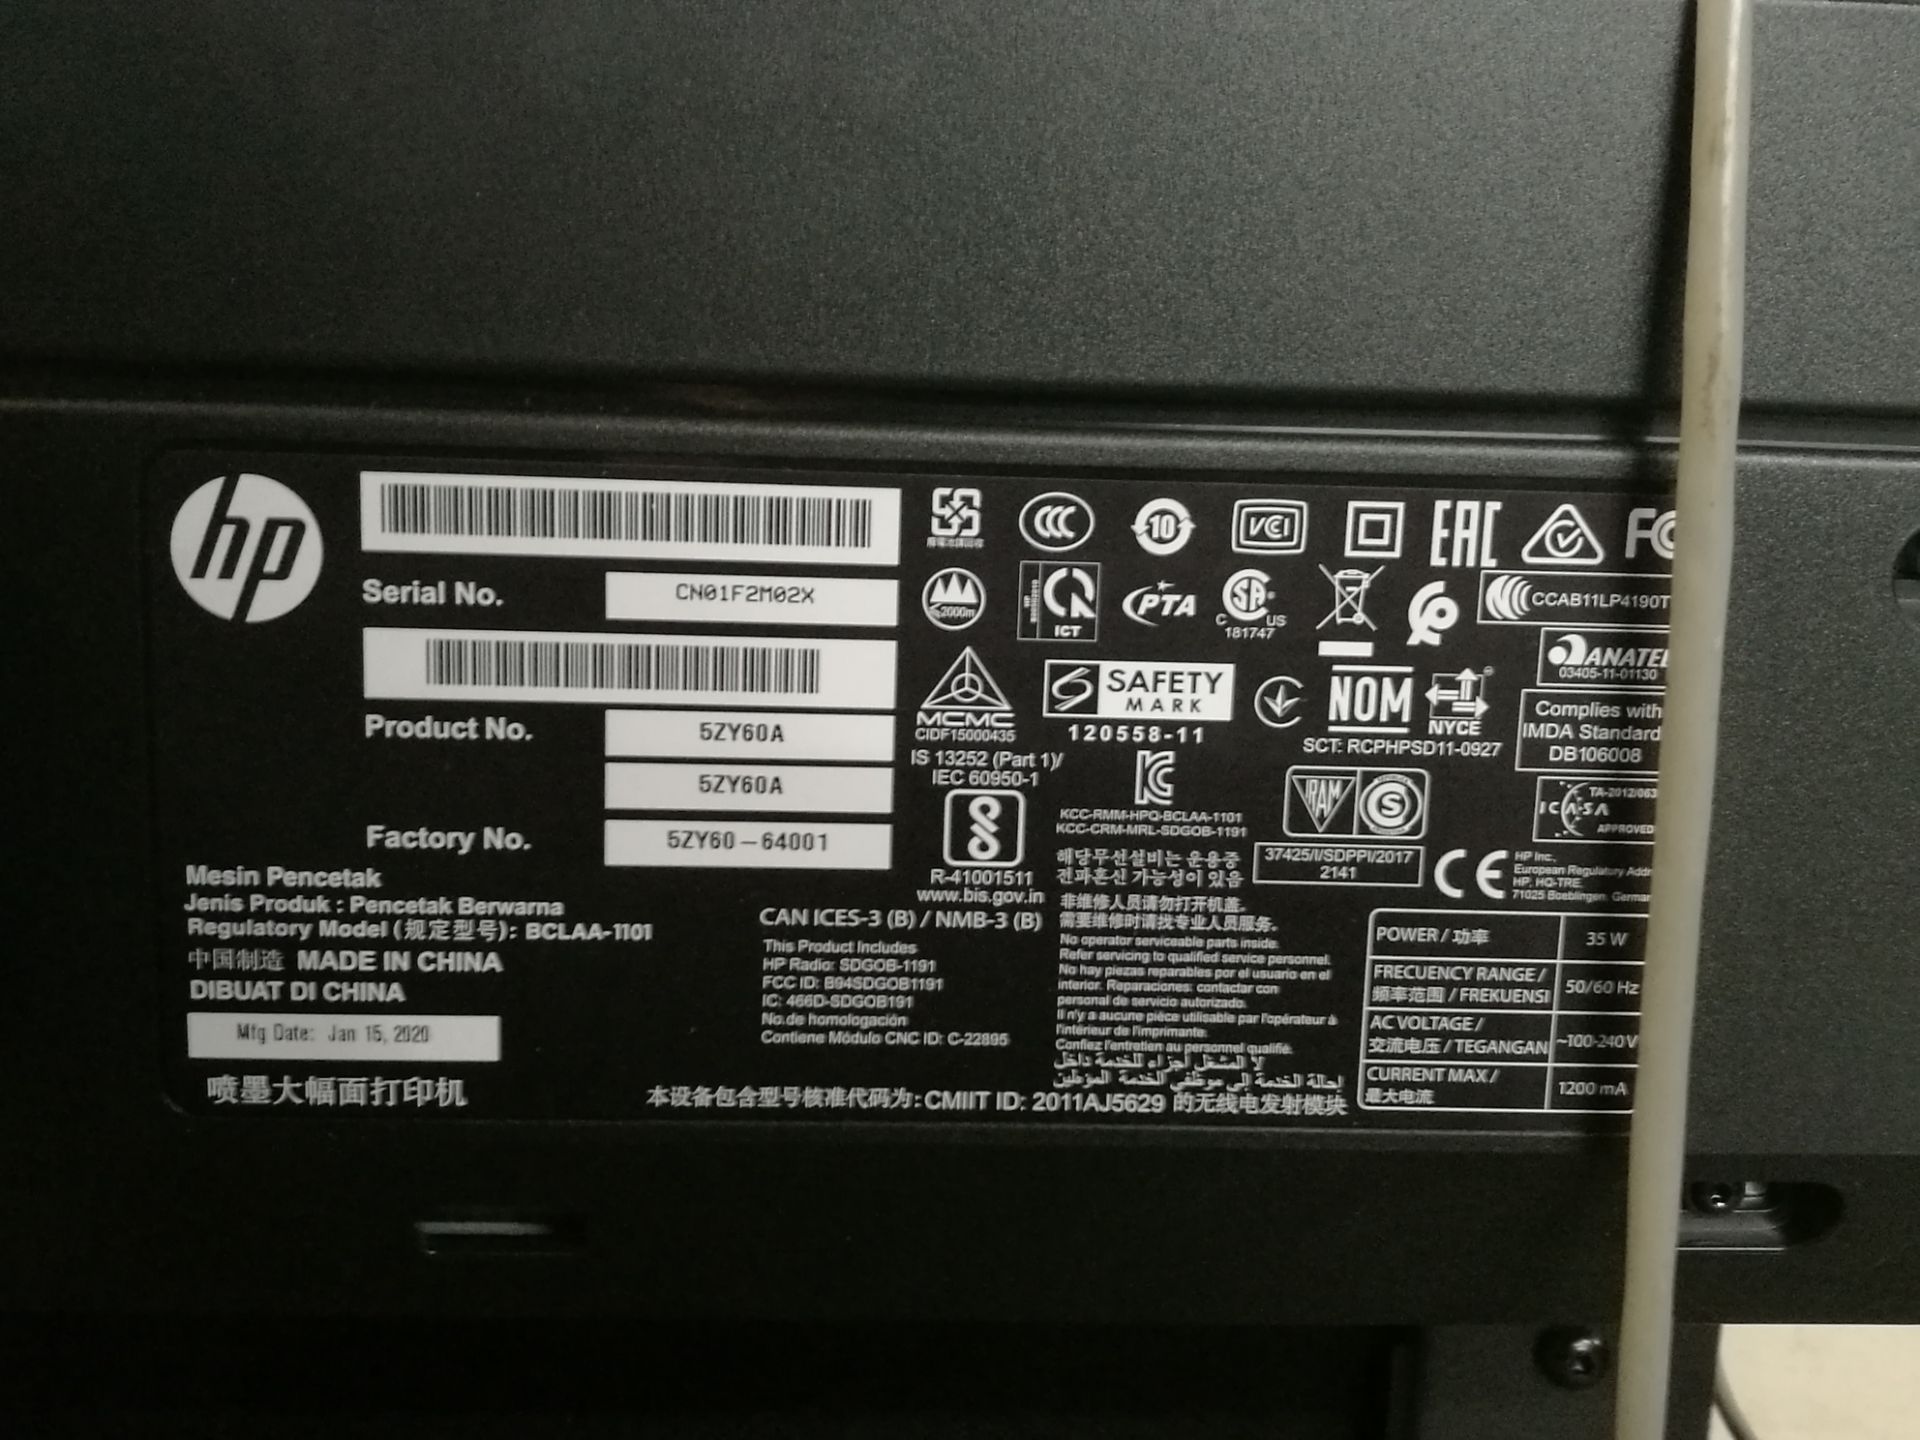 HP DesignJet T530 Plan Printer - Image 5 of 5